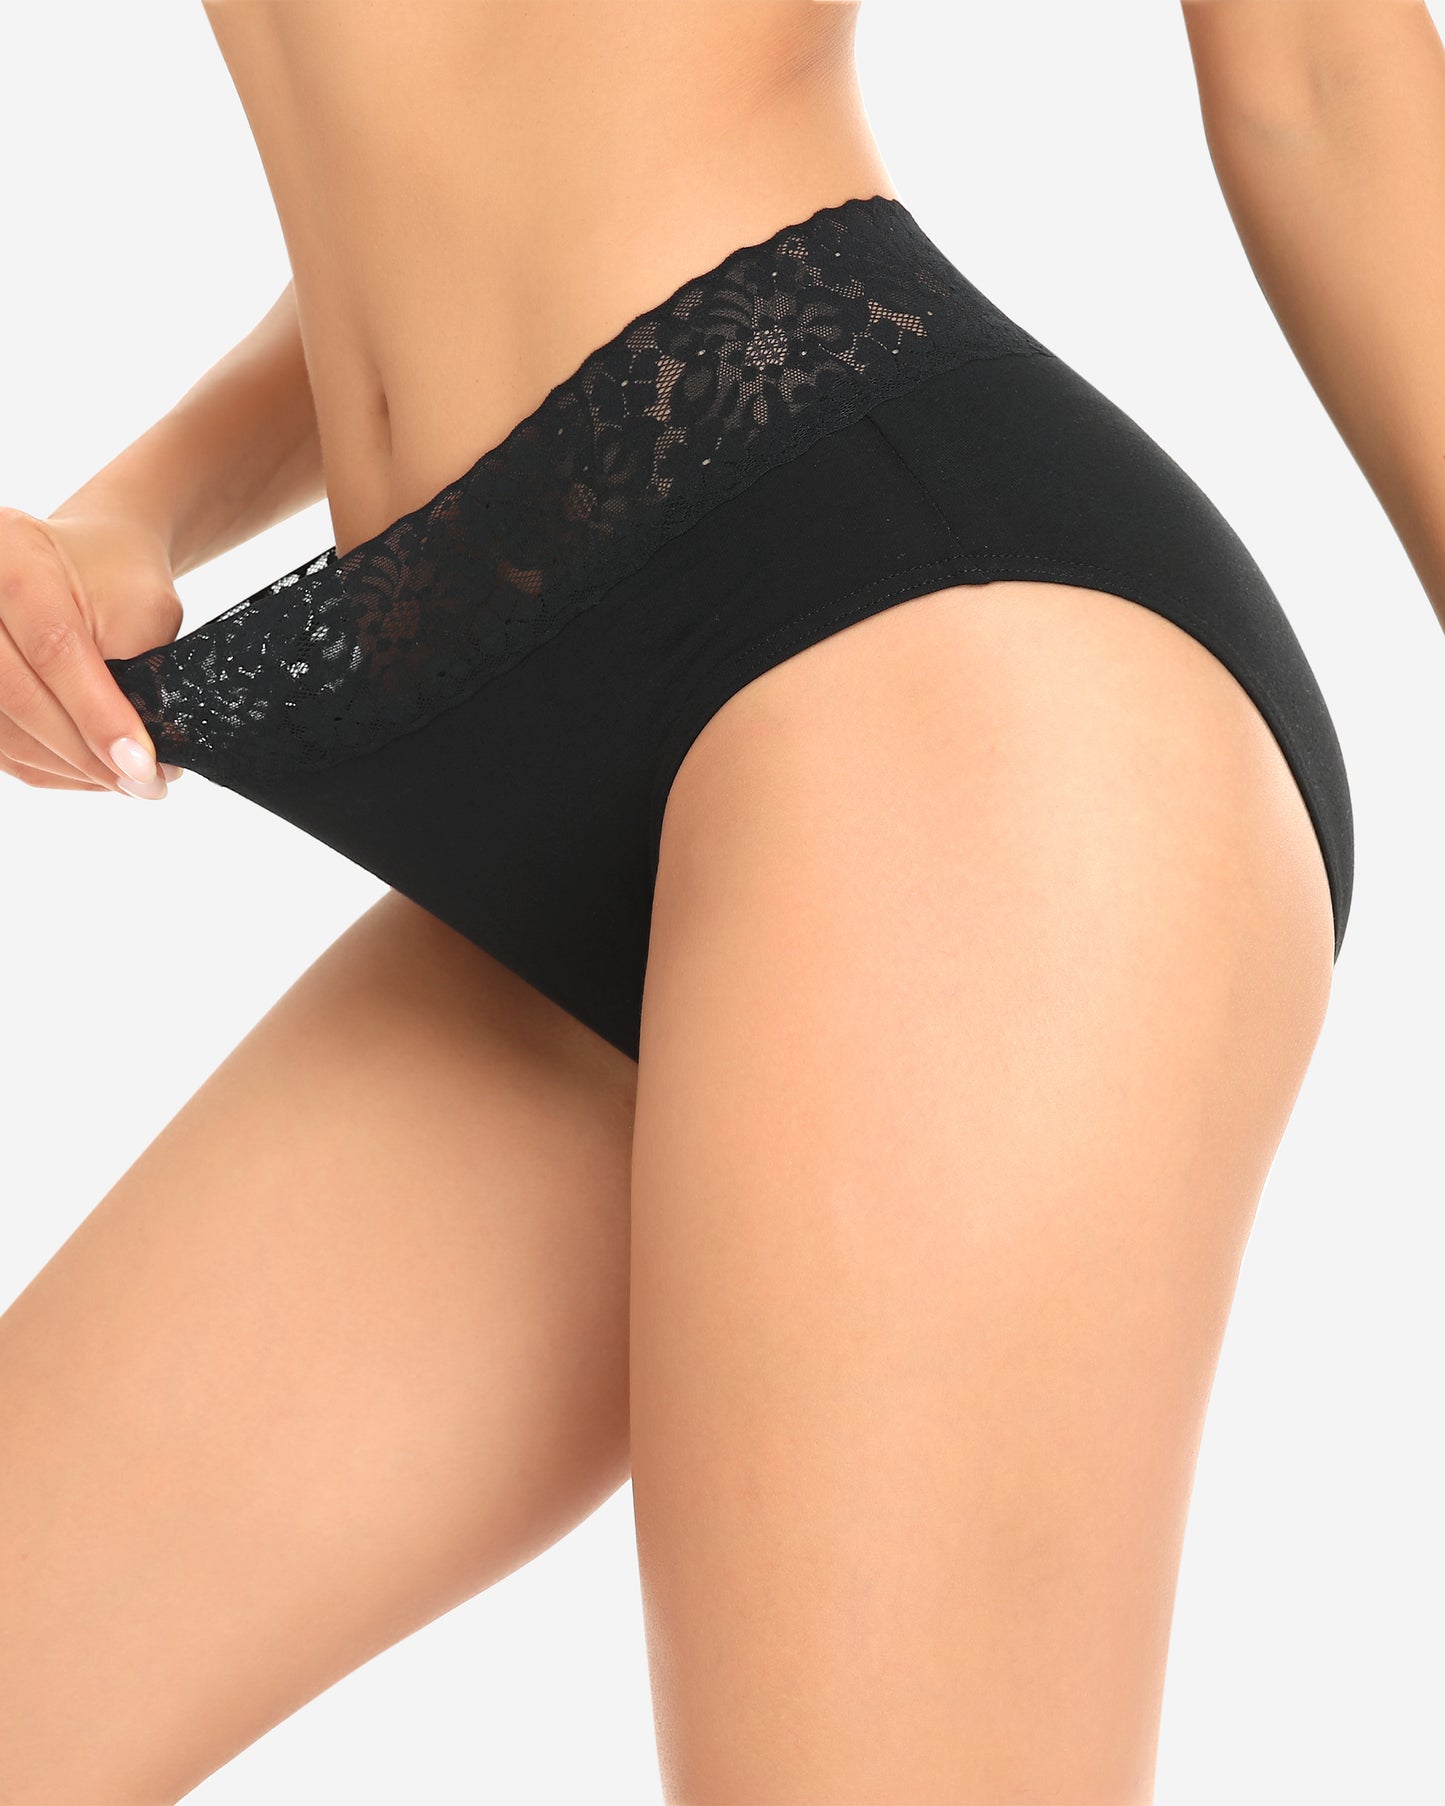 Wealurre Women's Underwear Lace balck Briefs Cotton Hipster - wealurre